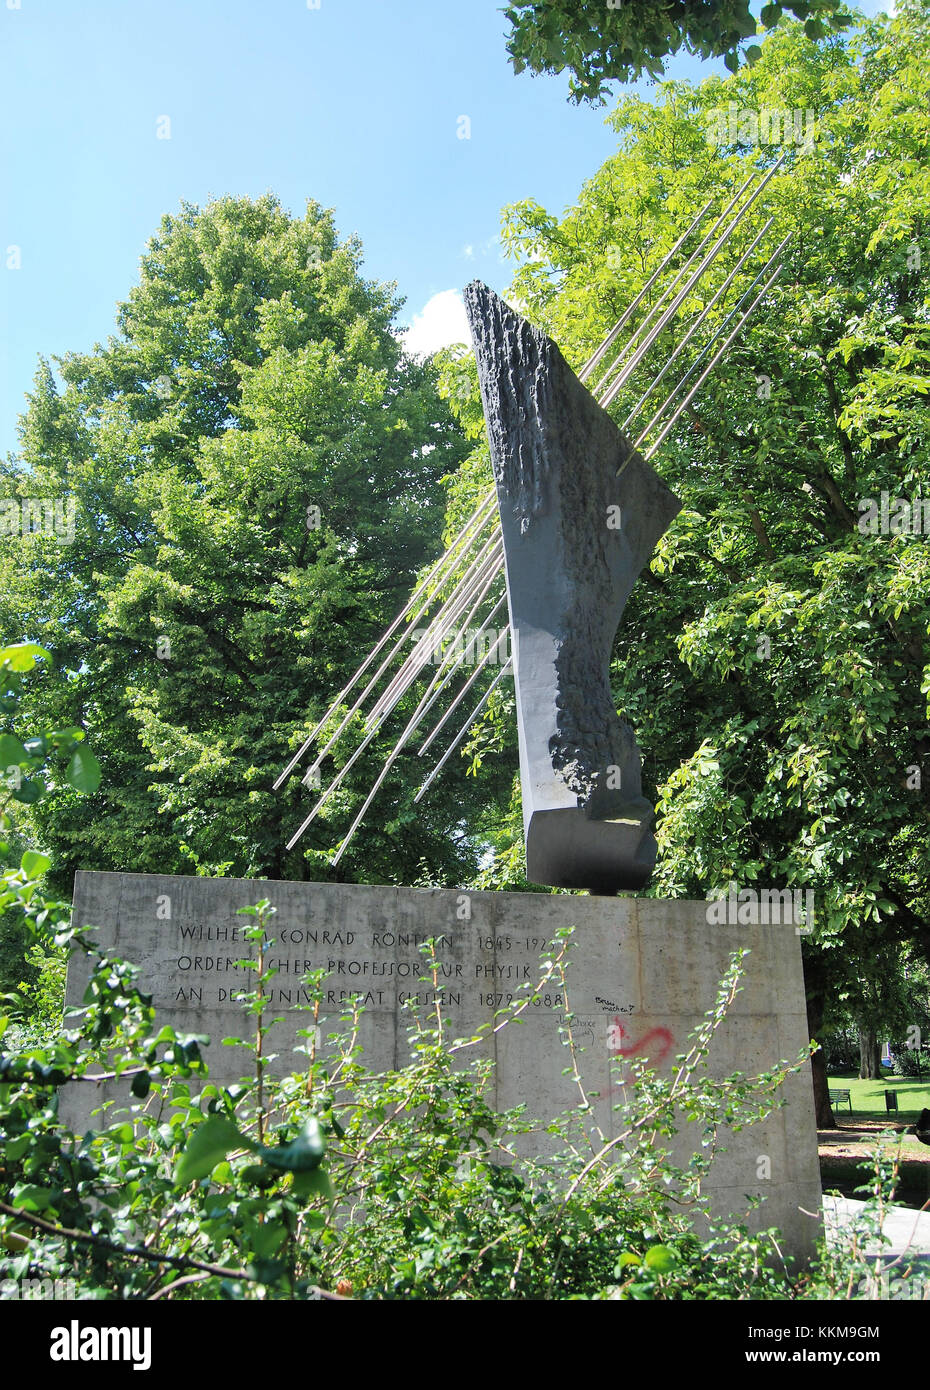 Röntgendenkmal in Gießen, Denkmal des Berliner Künstlers Erich Fritz Reuter, gegründet 1962 zu Ehren von Wilhelm Conrad Röntgen. Stockfoto